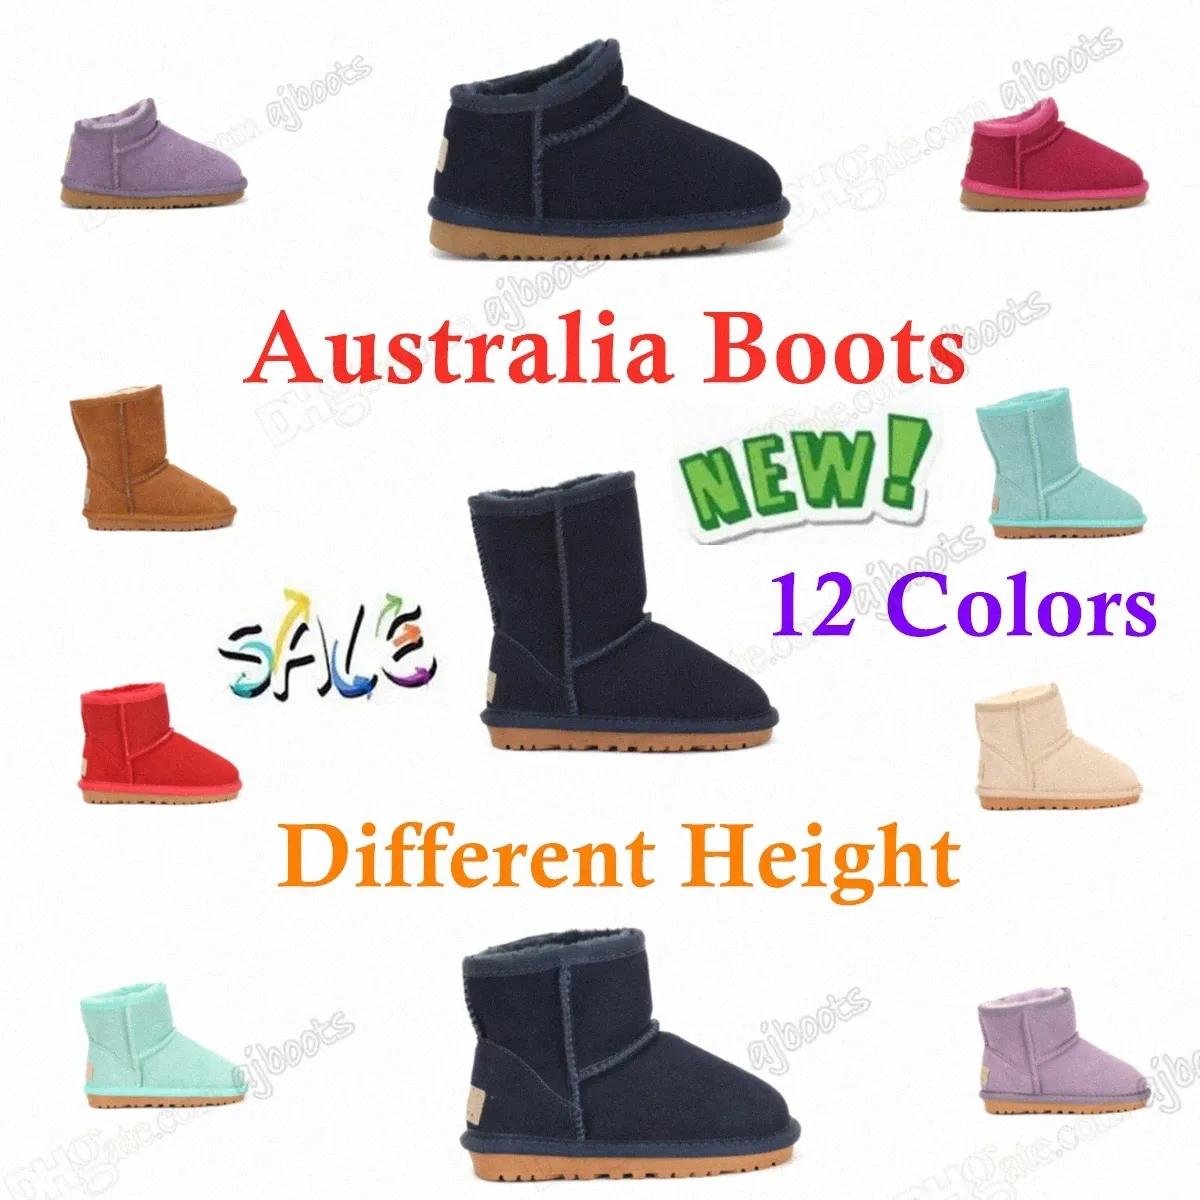 Donne Bambini Scarpe Bambini Scarpe Girls Boots Australian Australia Ginocchio Alto Inverno Caldo Mini Caviglia Bot Bot Black Pink Scarpe corta per bambini Sneaker piattaforma neve in vendita